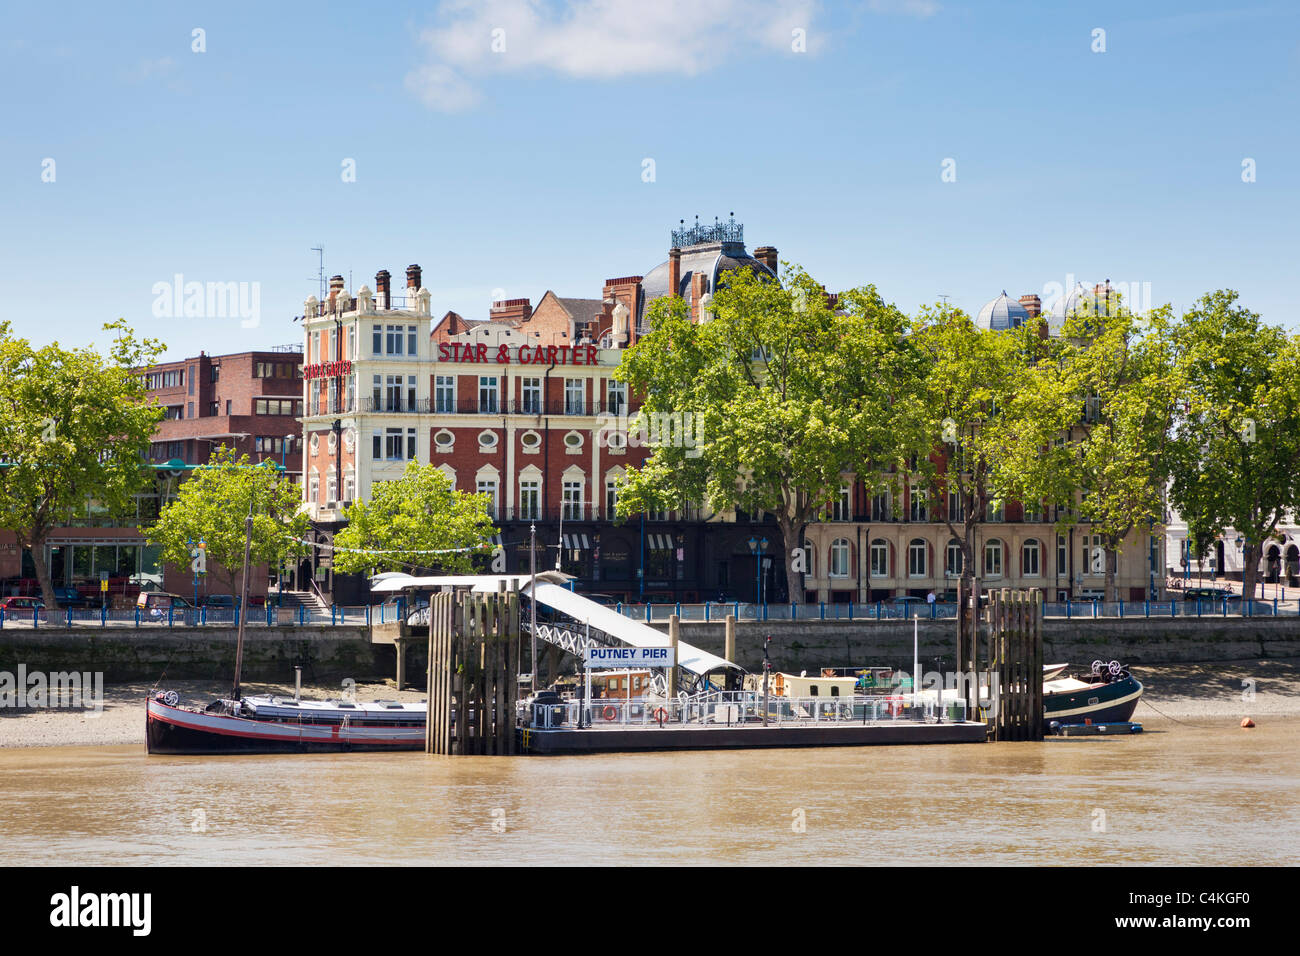 Avis de Putney Pier sur la Tamise, Londres, Angleterre, Royaume-Uni Banque D'Images